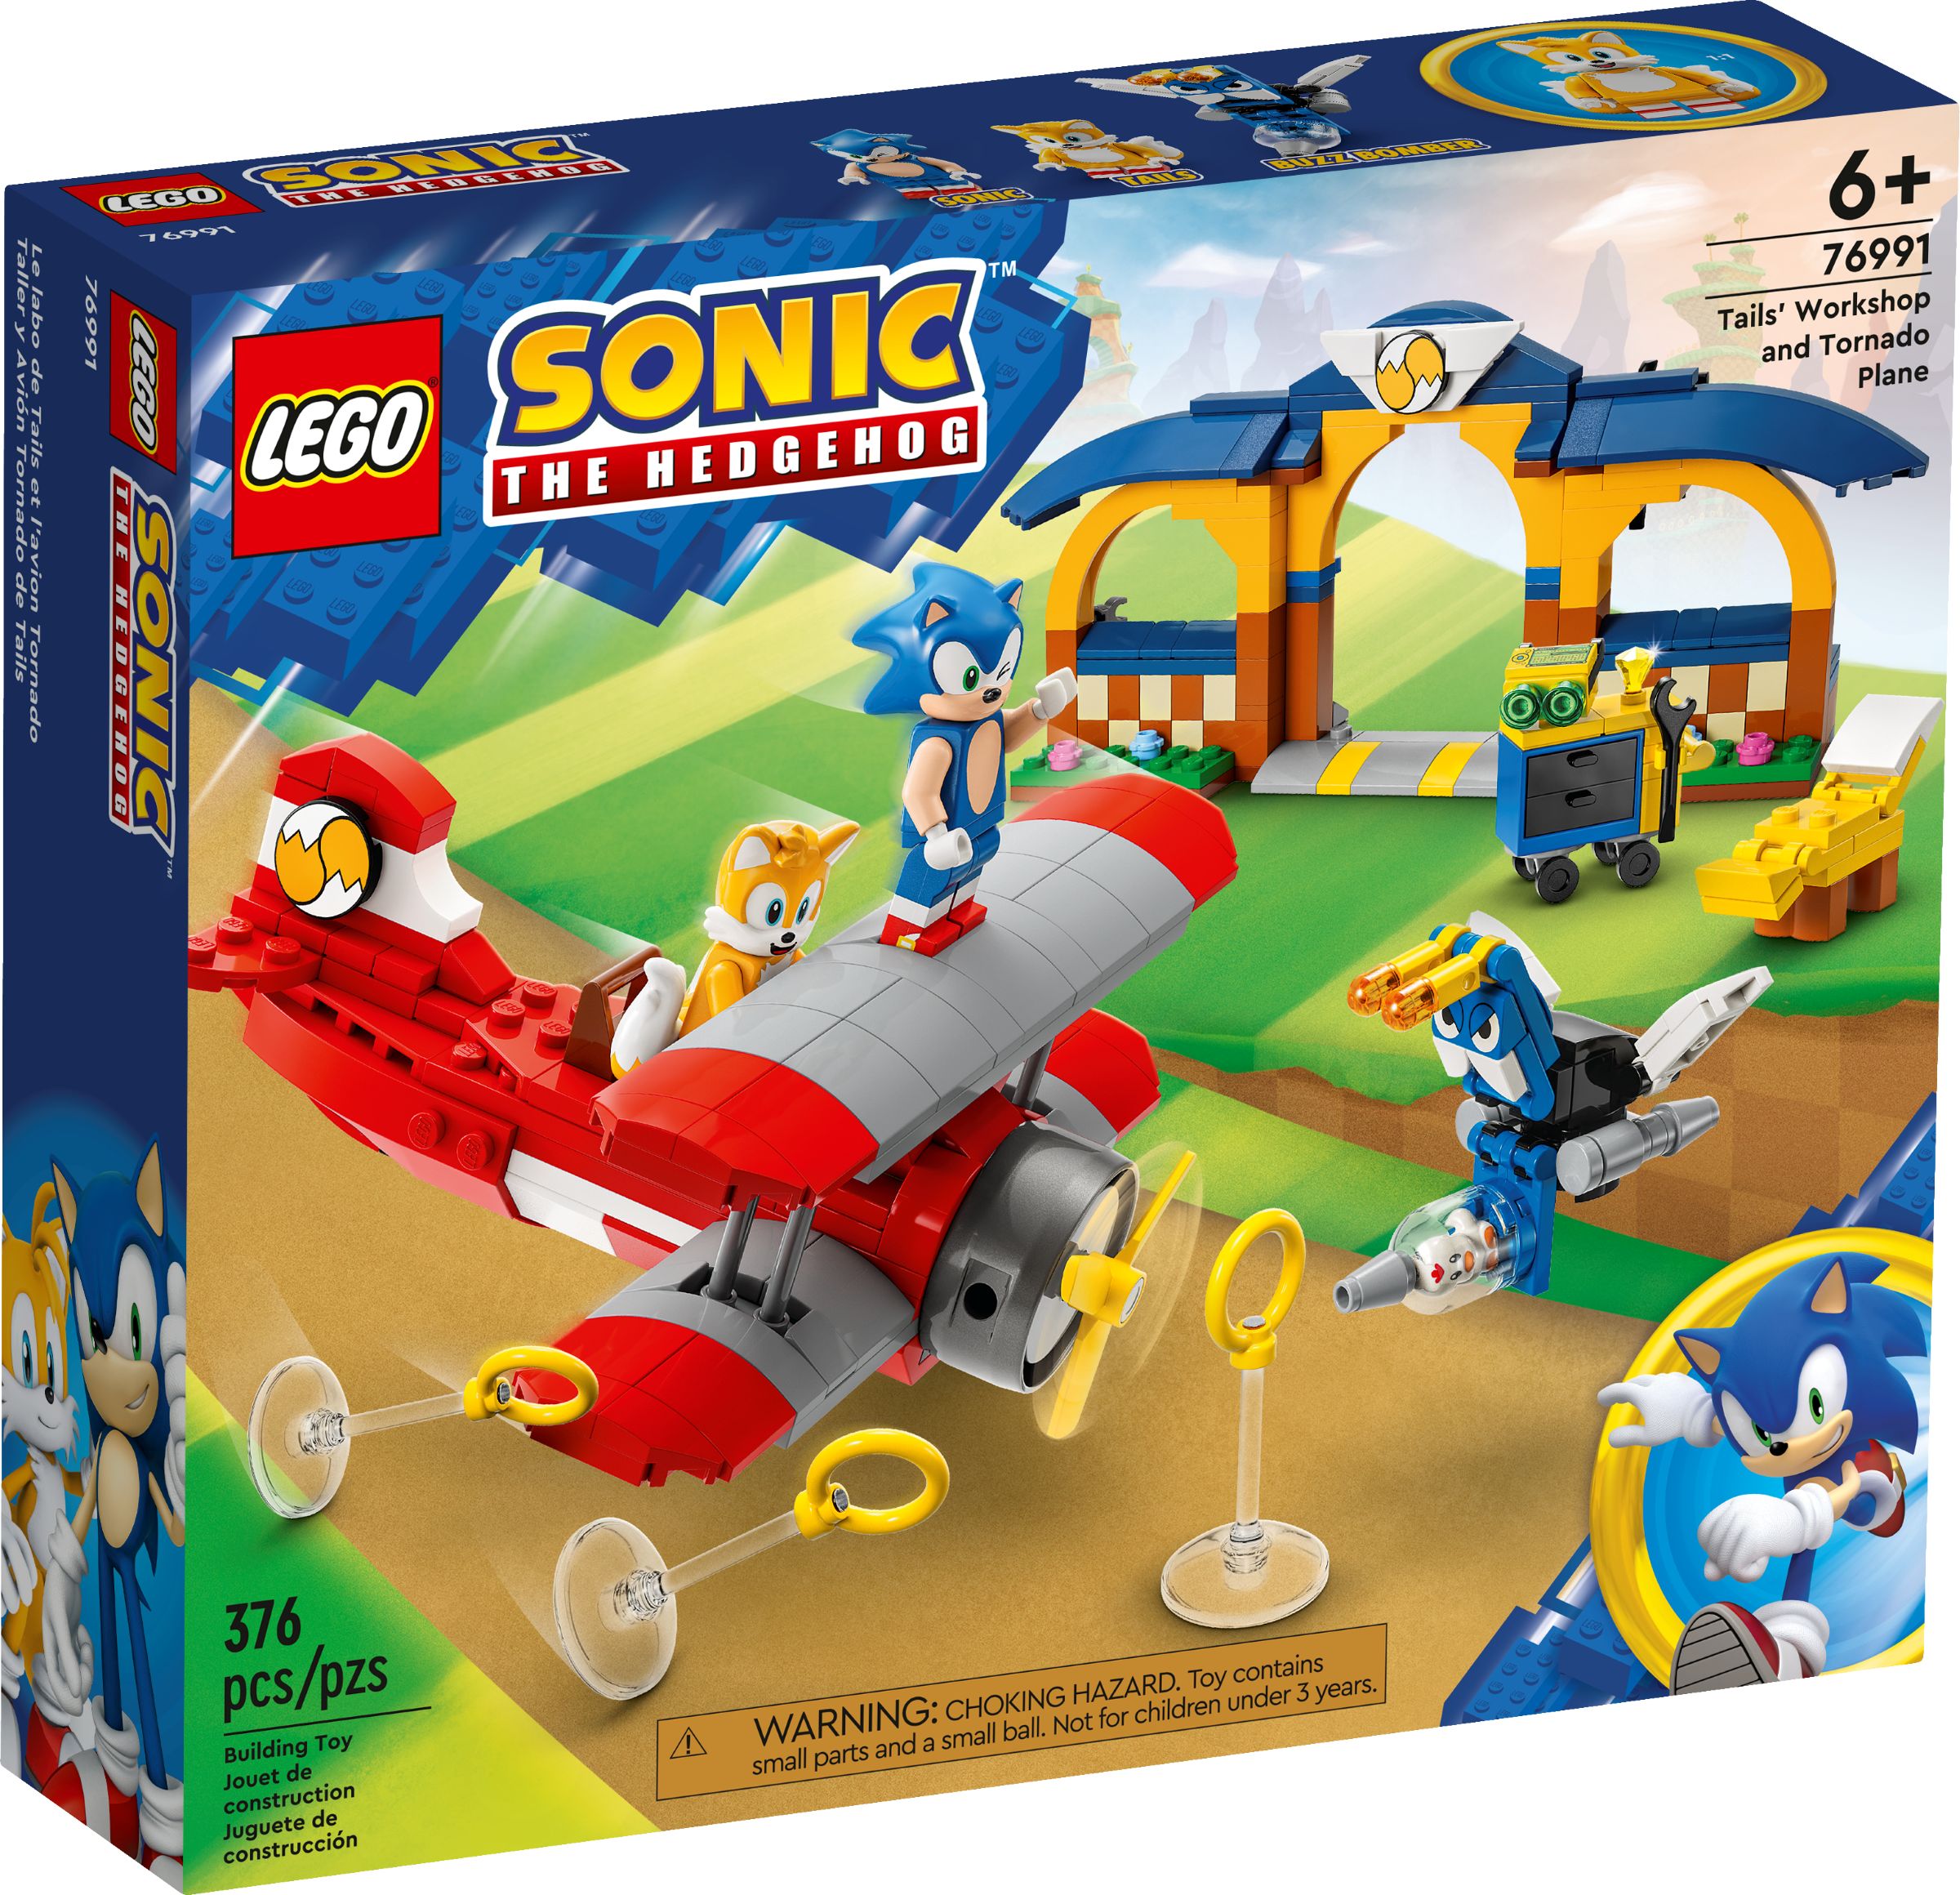 LEGO Sonic the Hedgehog 76991 Tails‘ Tornadoflieger mit Werkstatt LEGO_76991_alt1.jpg